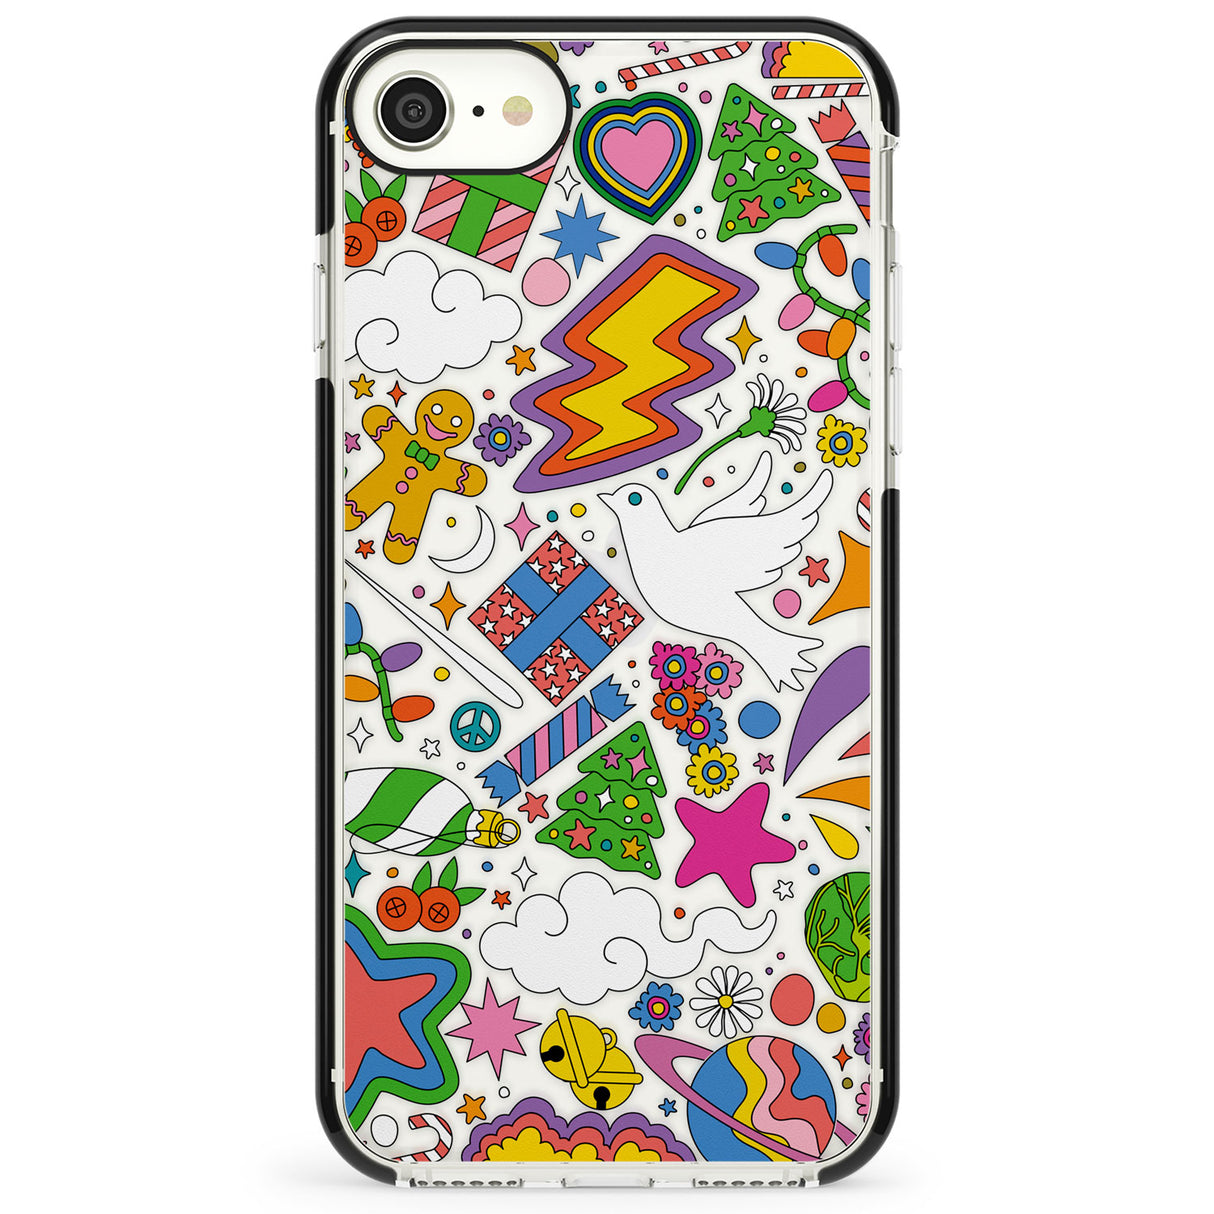 Whimsical Wonderland Impact Phone Case for iPhone SE